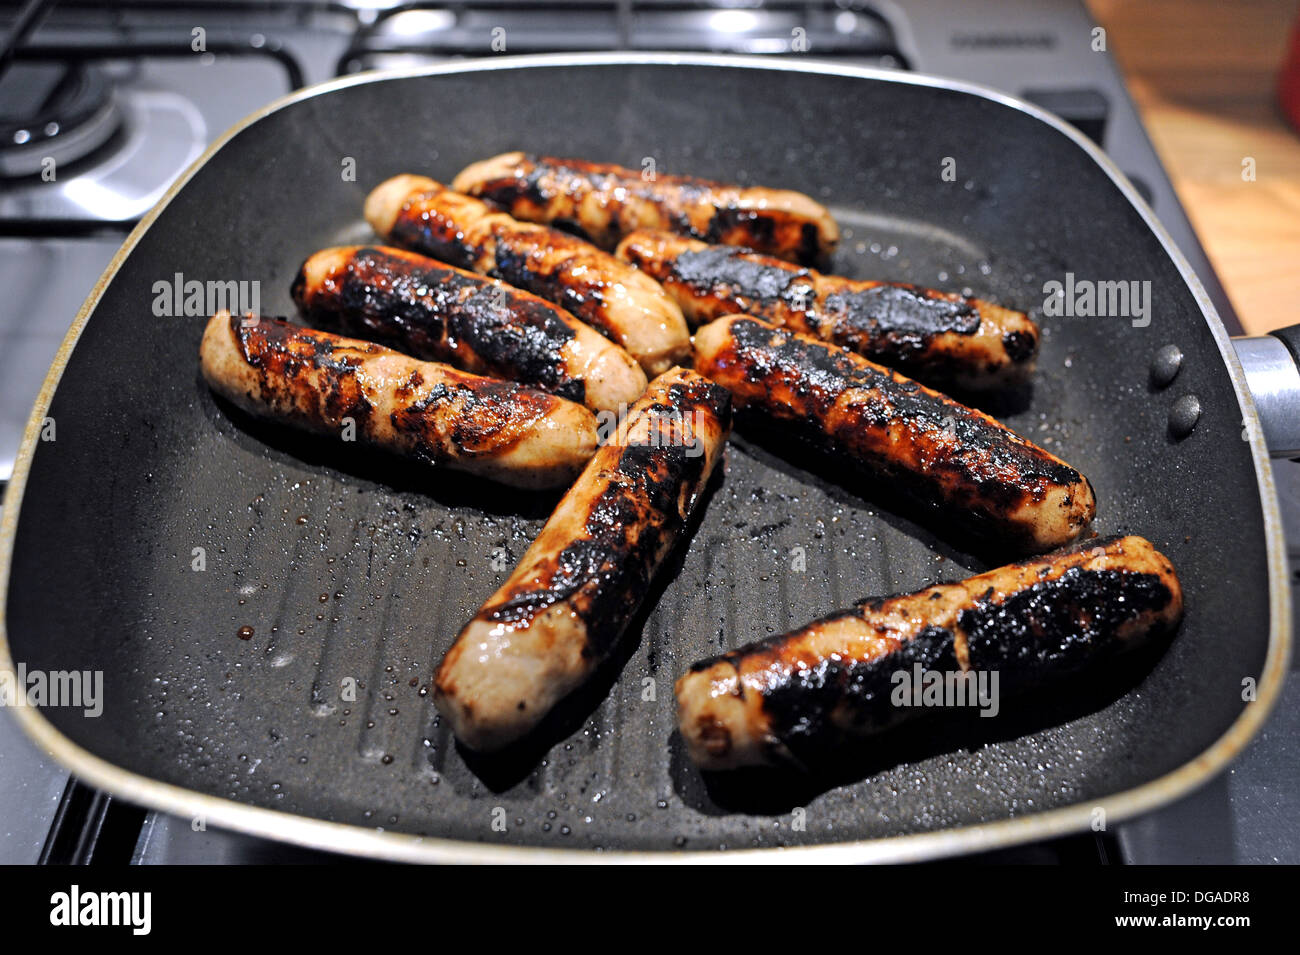 Würstchen aus Schweinefleisch kochen in einer Pfanne schwenken suchen  verbrannt und verkohlt Stockfotografie - Alamy